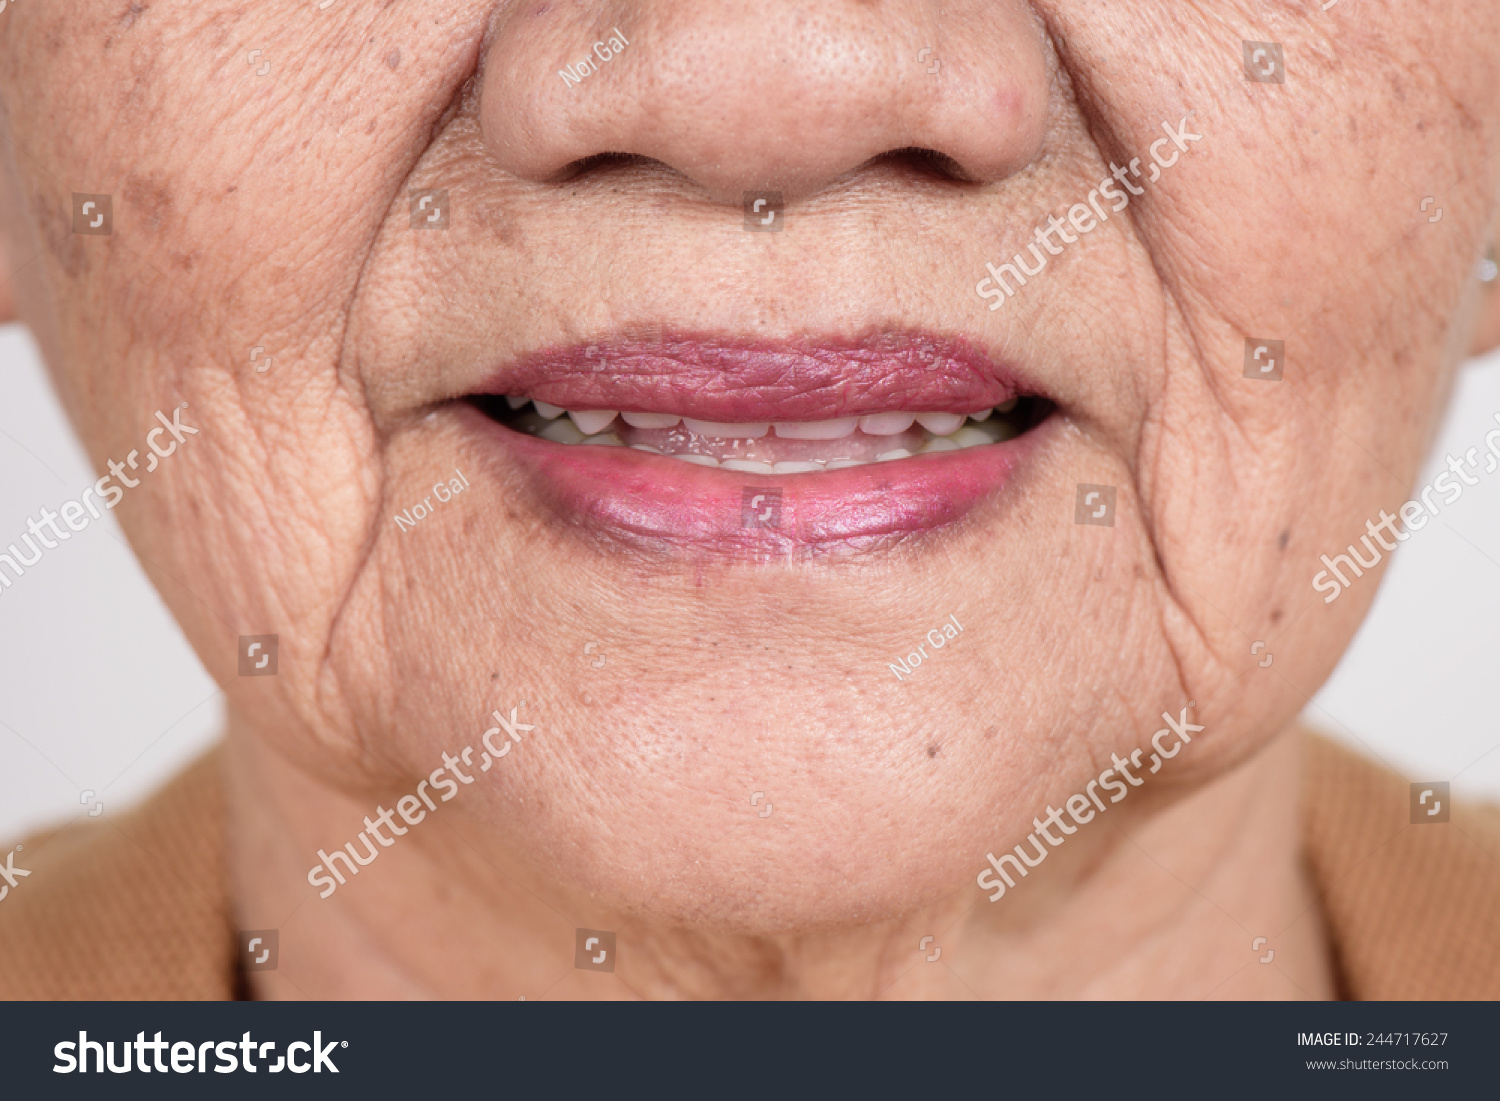 Old woman mouth: стоковые изображения в HD и миллионы других стоковых фотог...